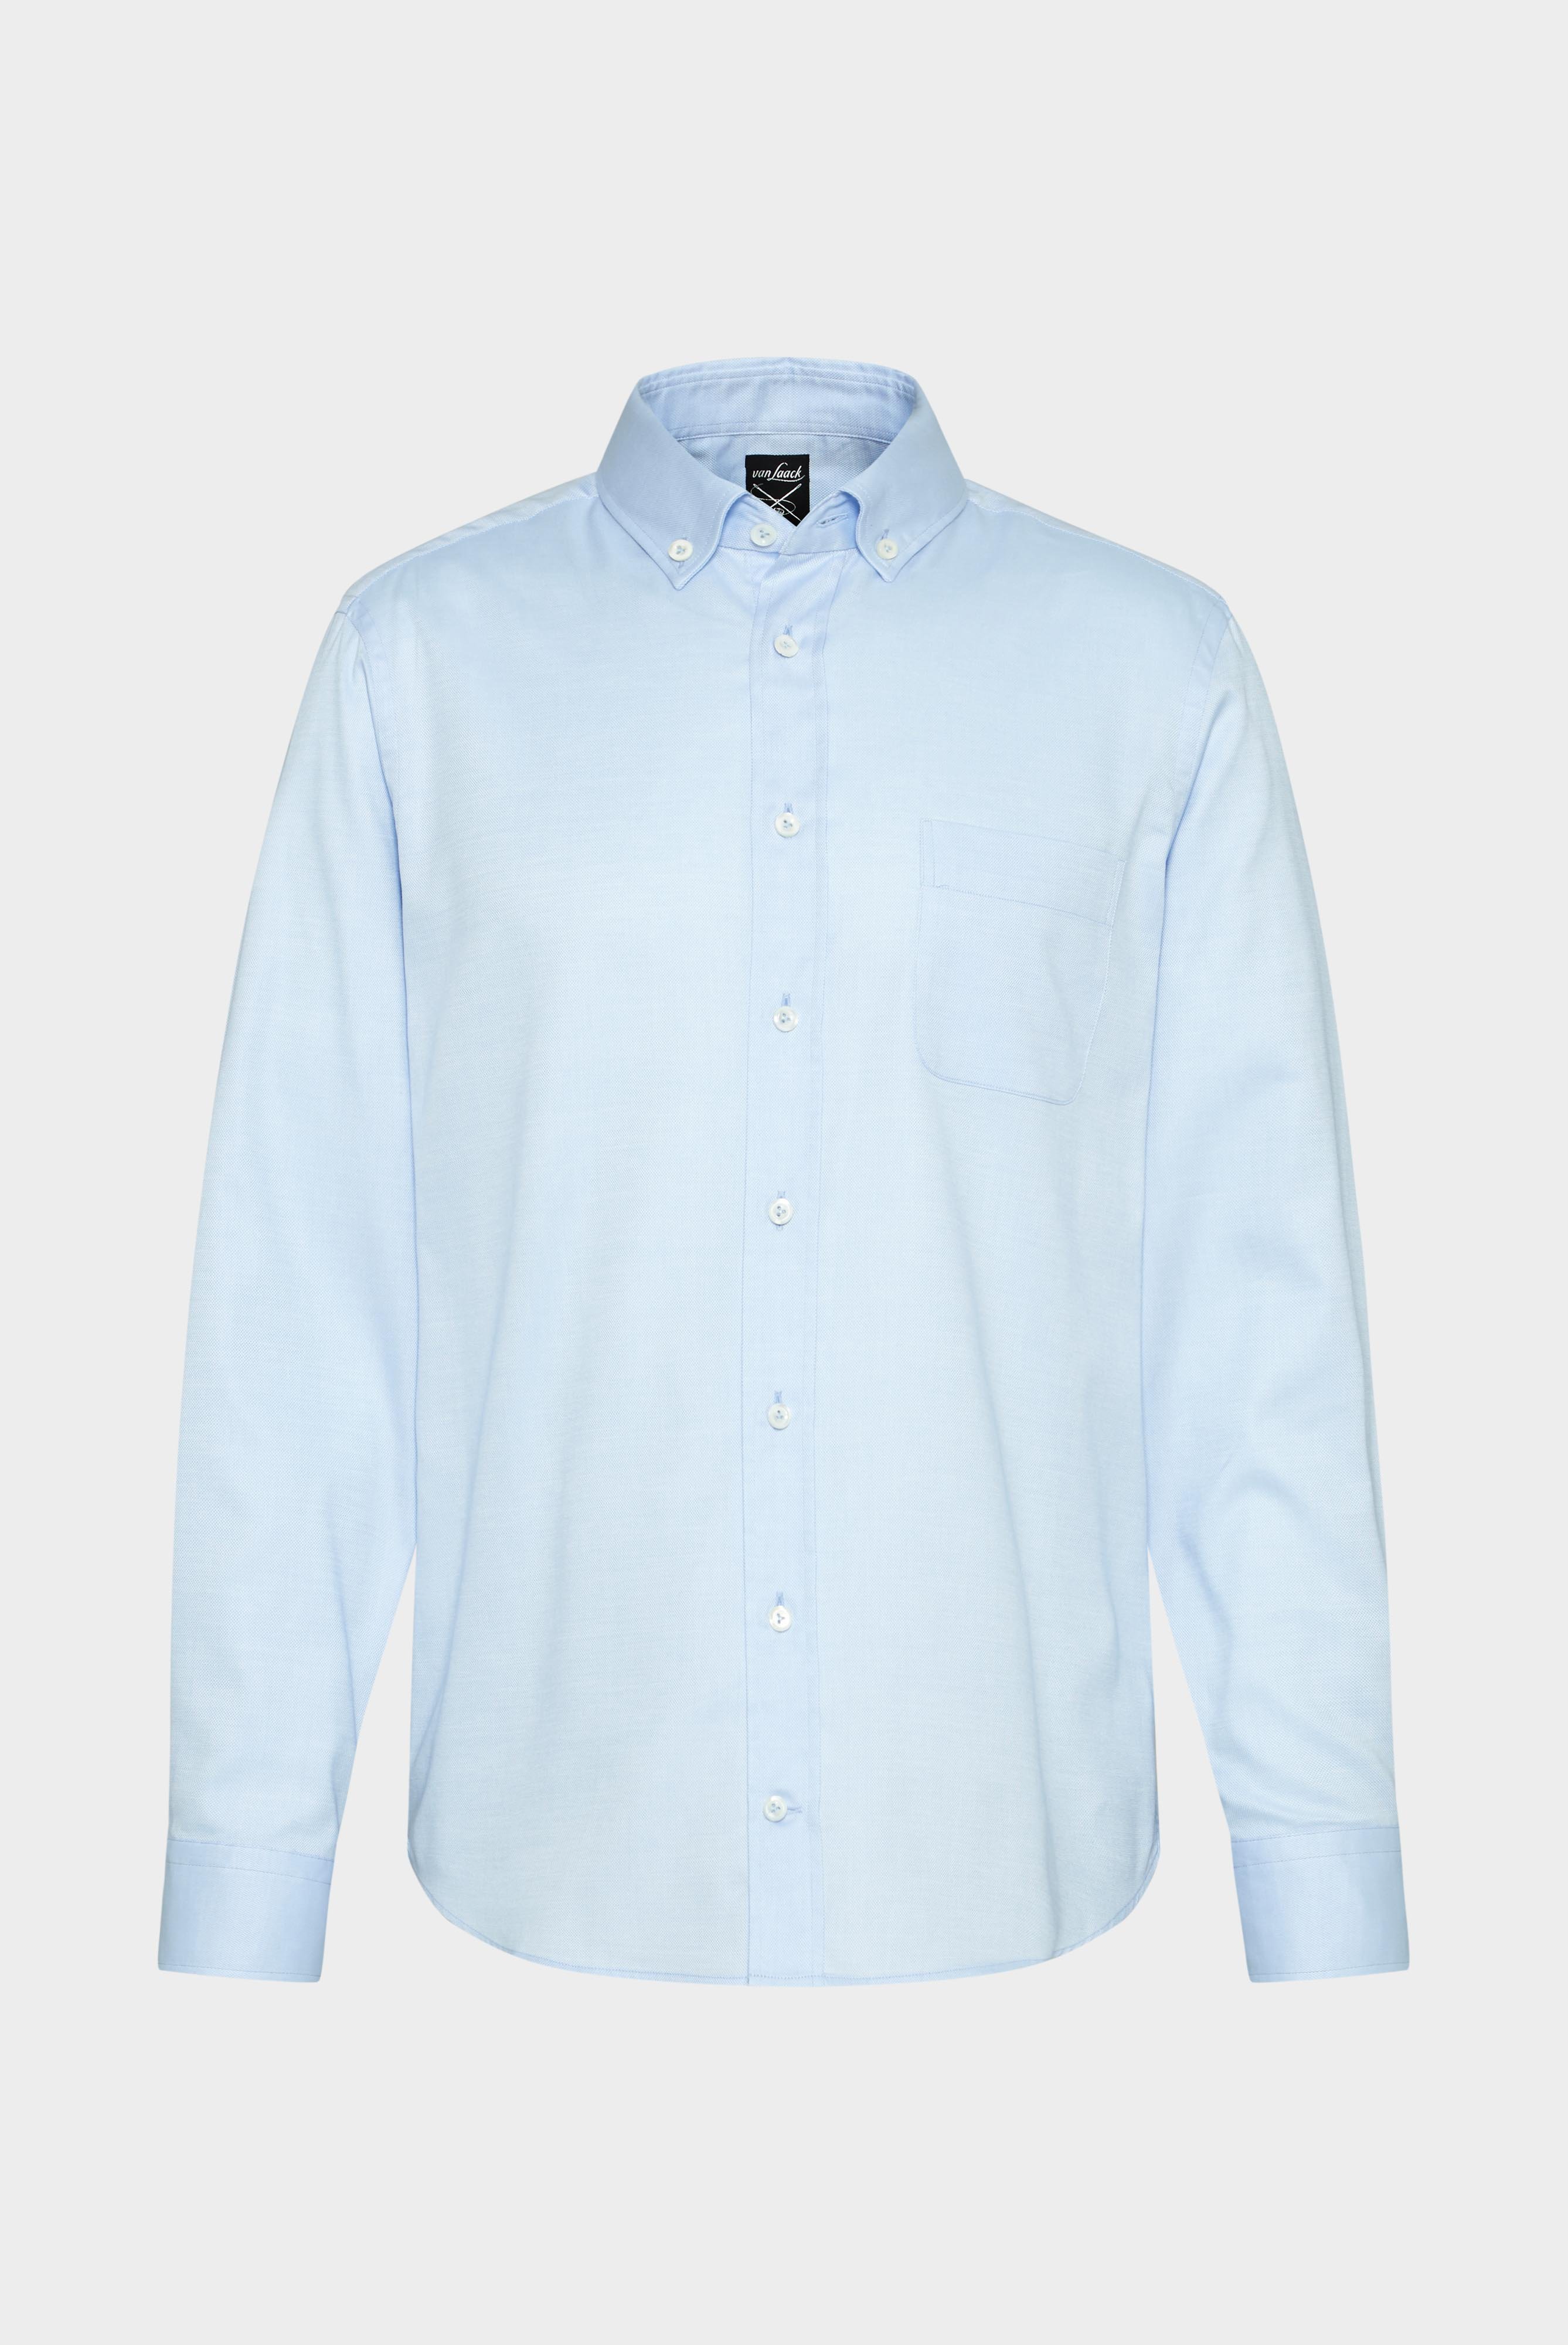 Casual Hemden+Hemd mit Strukturmuster Tailor Fit+20.2013.AV.130872.720.37